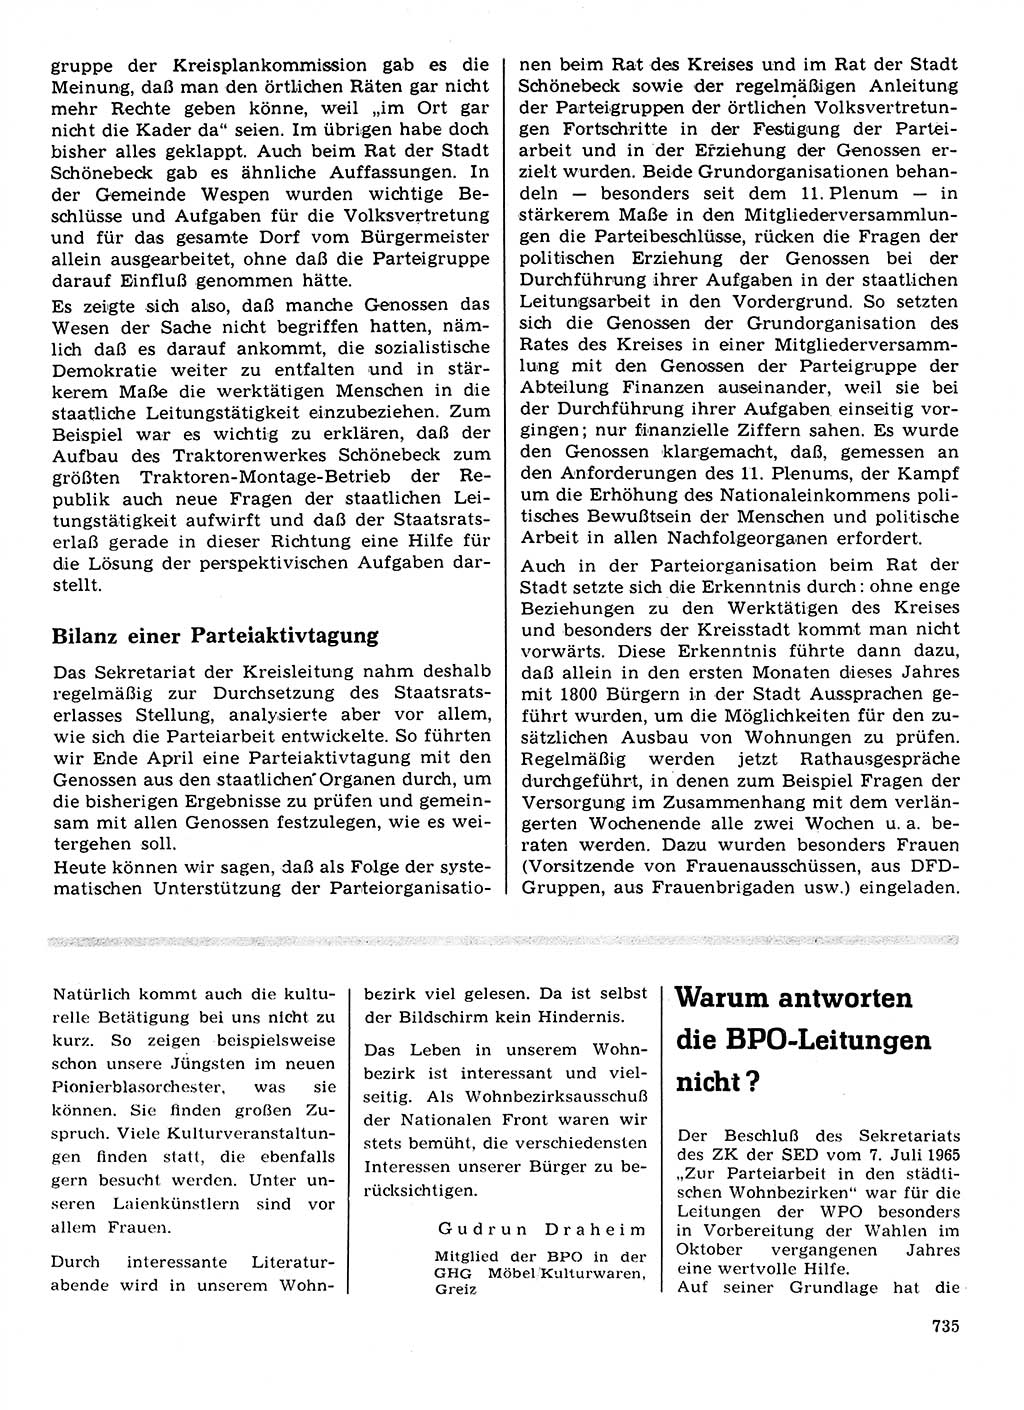 Neuer Weg (NW), Organ des Zentralkomitees (ZK) der SED (Sozialistische Einheitspartei Deutschlands) für Fragen des Parteilebens, 21. Jahrgang [Deutsche Demokratische Republik (DDR)] 1966, Seite 735 (NW ZK SED DDR 1966, S. 735)